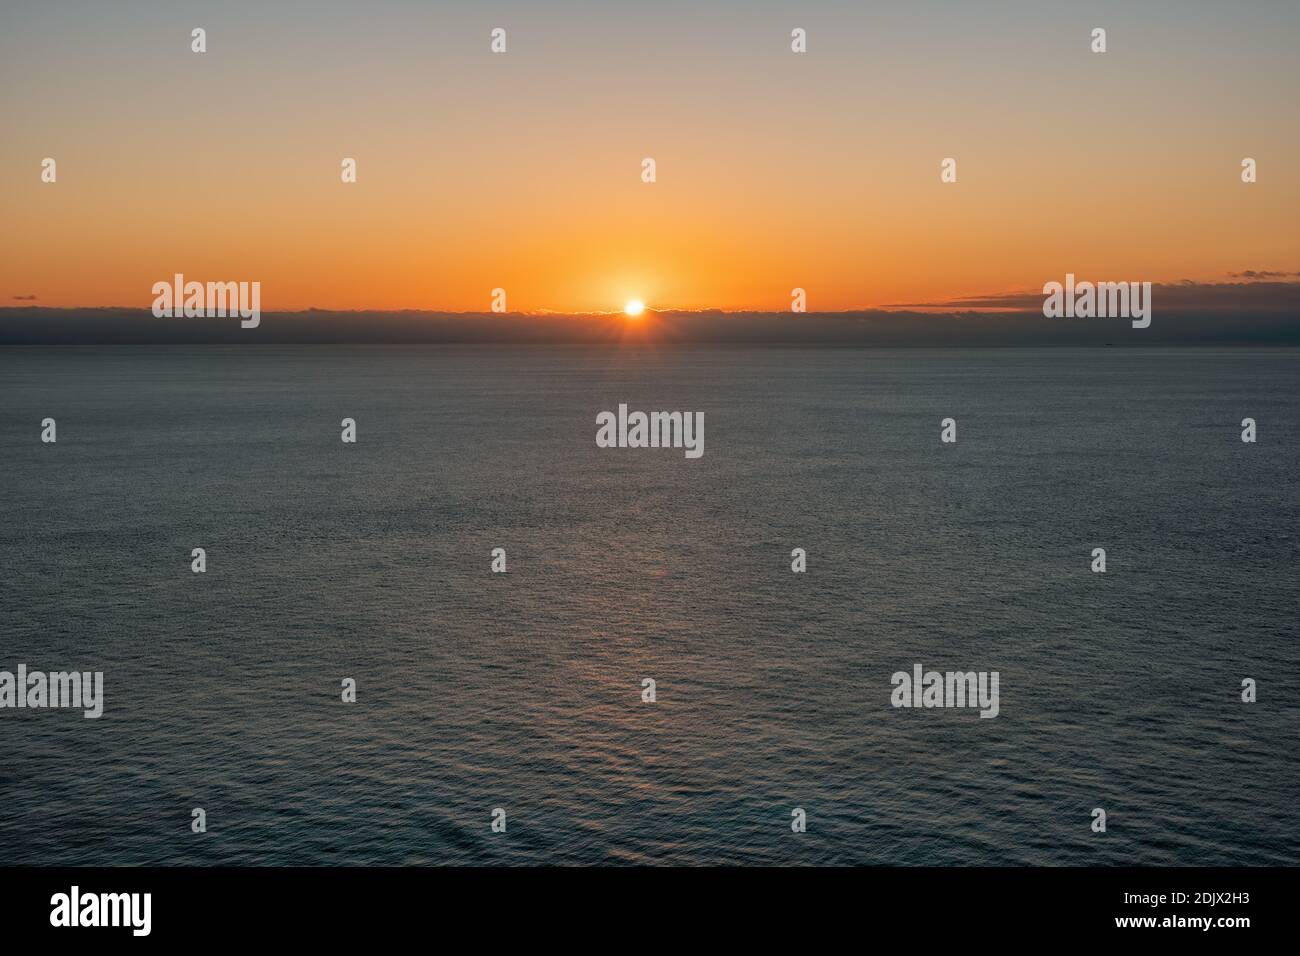 Résumé vue panoramique aérienne sur un coucher de soleil chaud au-dessus de la mer. Rien que le ciel, les nuages et l'eau. Le concept de silence et d'unité de calme avec la nature. Banque D'Images